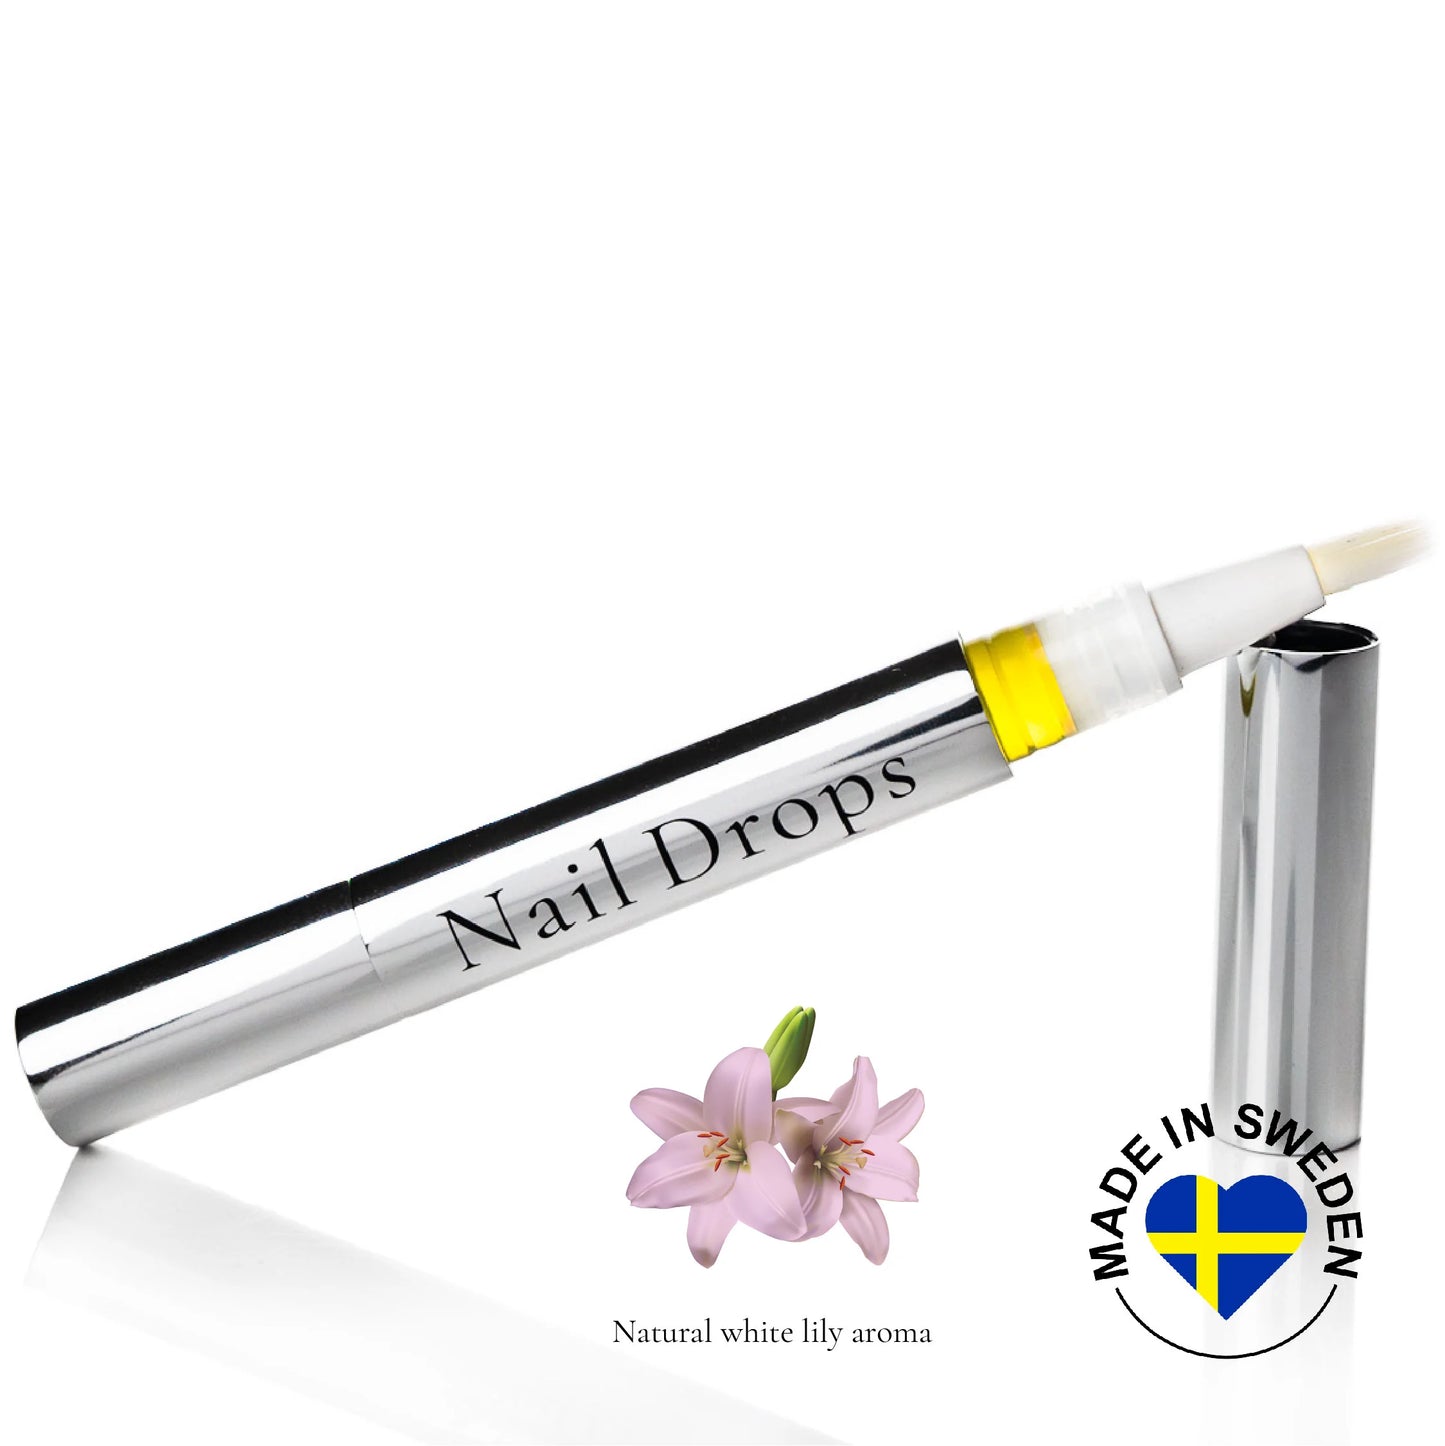 Camilla of Sweden Nail Drops penna